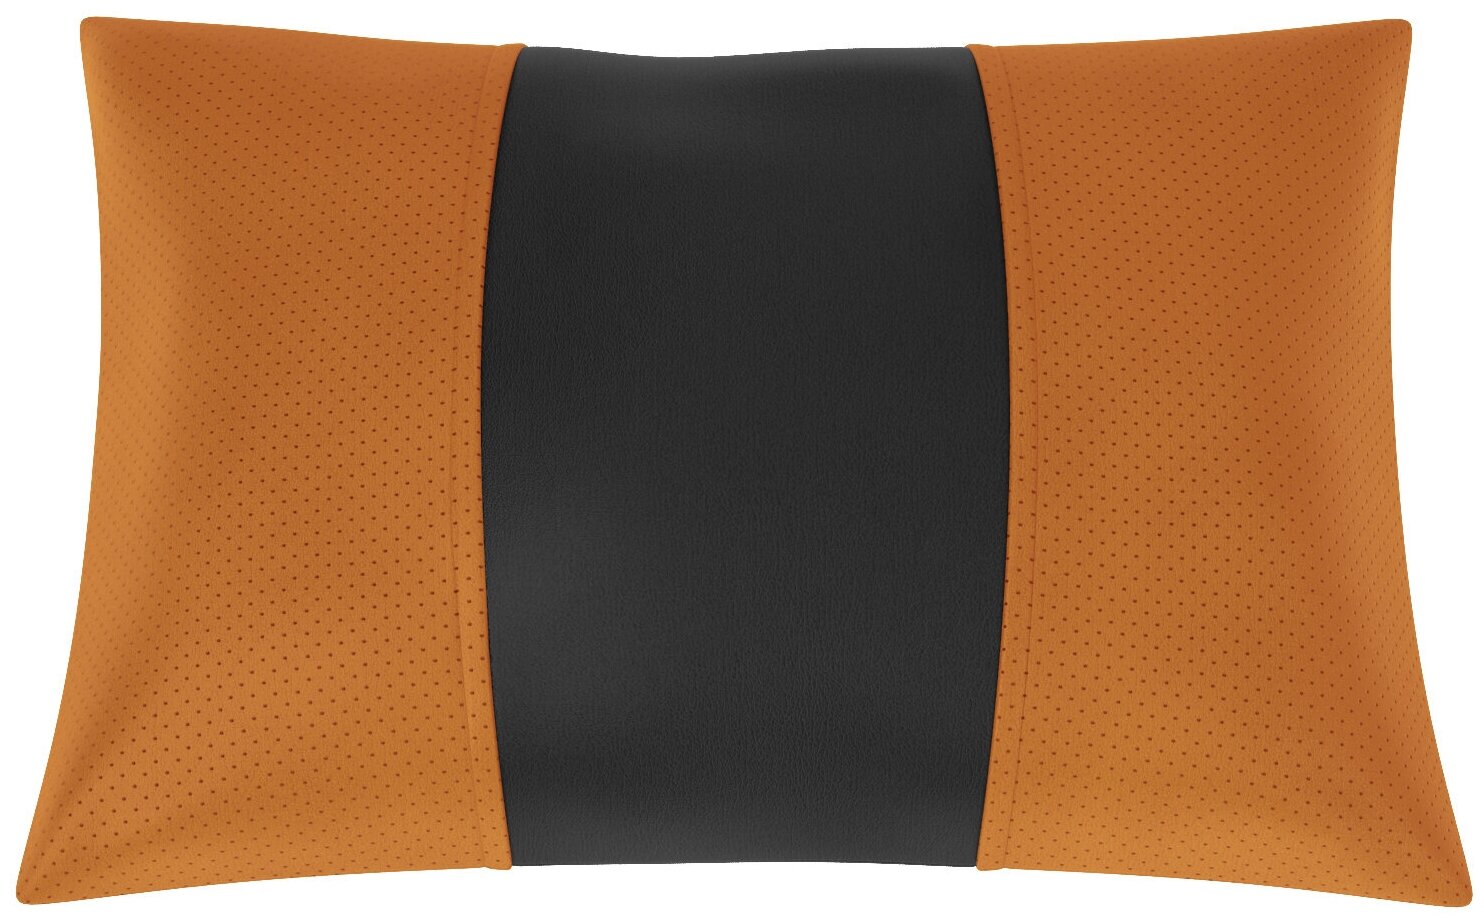 Автомобильная подушка для Ford Mondeo 5 (Форд Мондео 5). Экокожа. Середина: чёрная гладкая экокожа. Боковины: оранжевая экокожа с перфорацией. 1 шт.